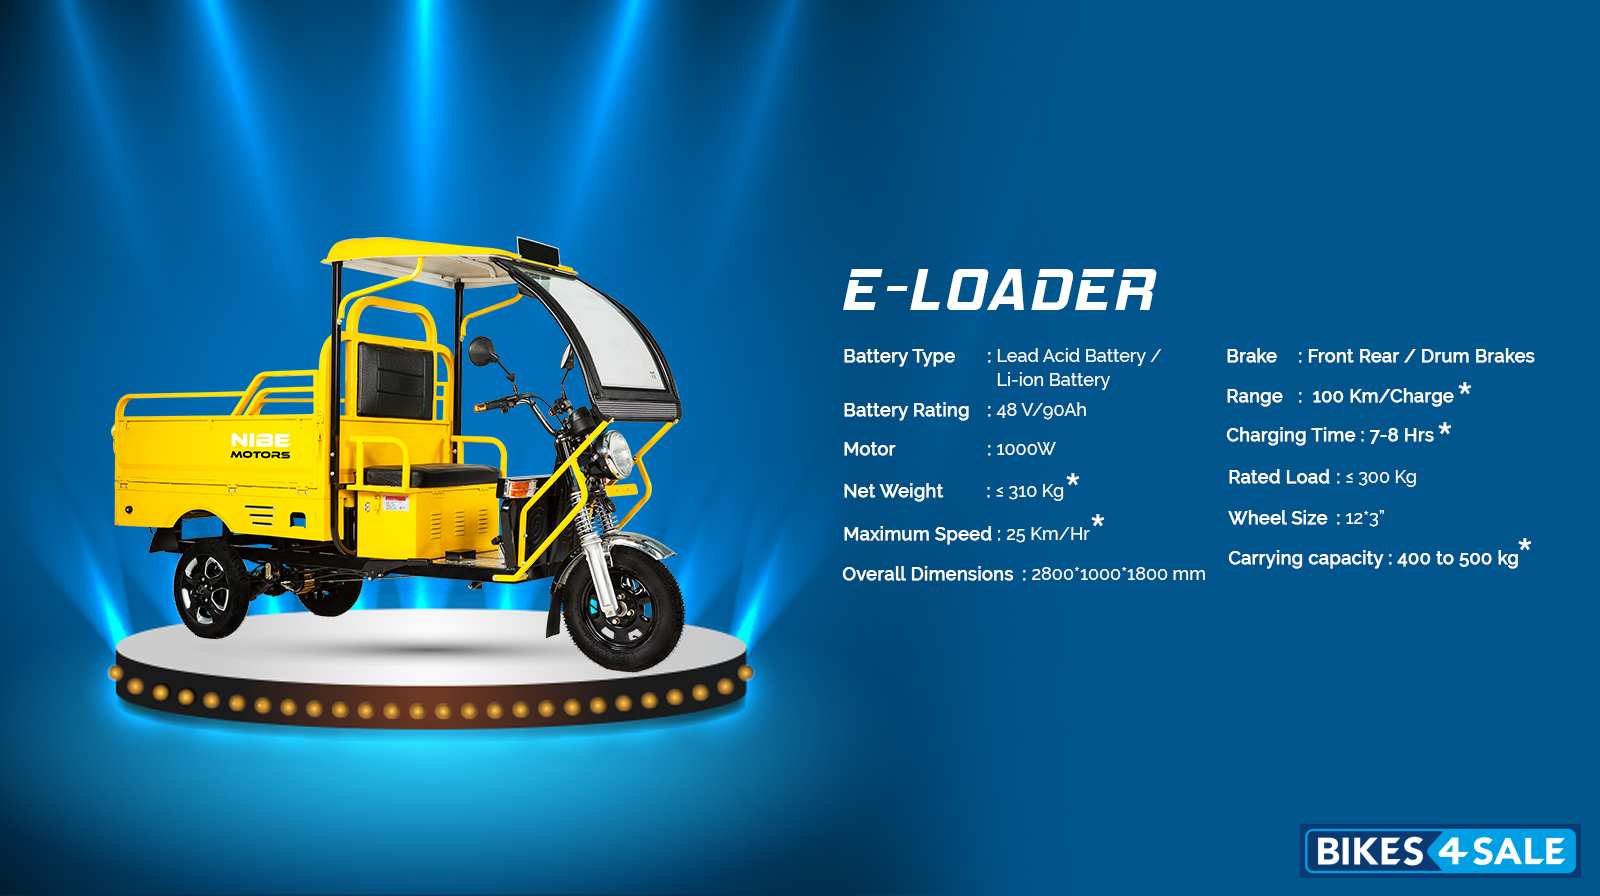 Nibe Motors E-Loader